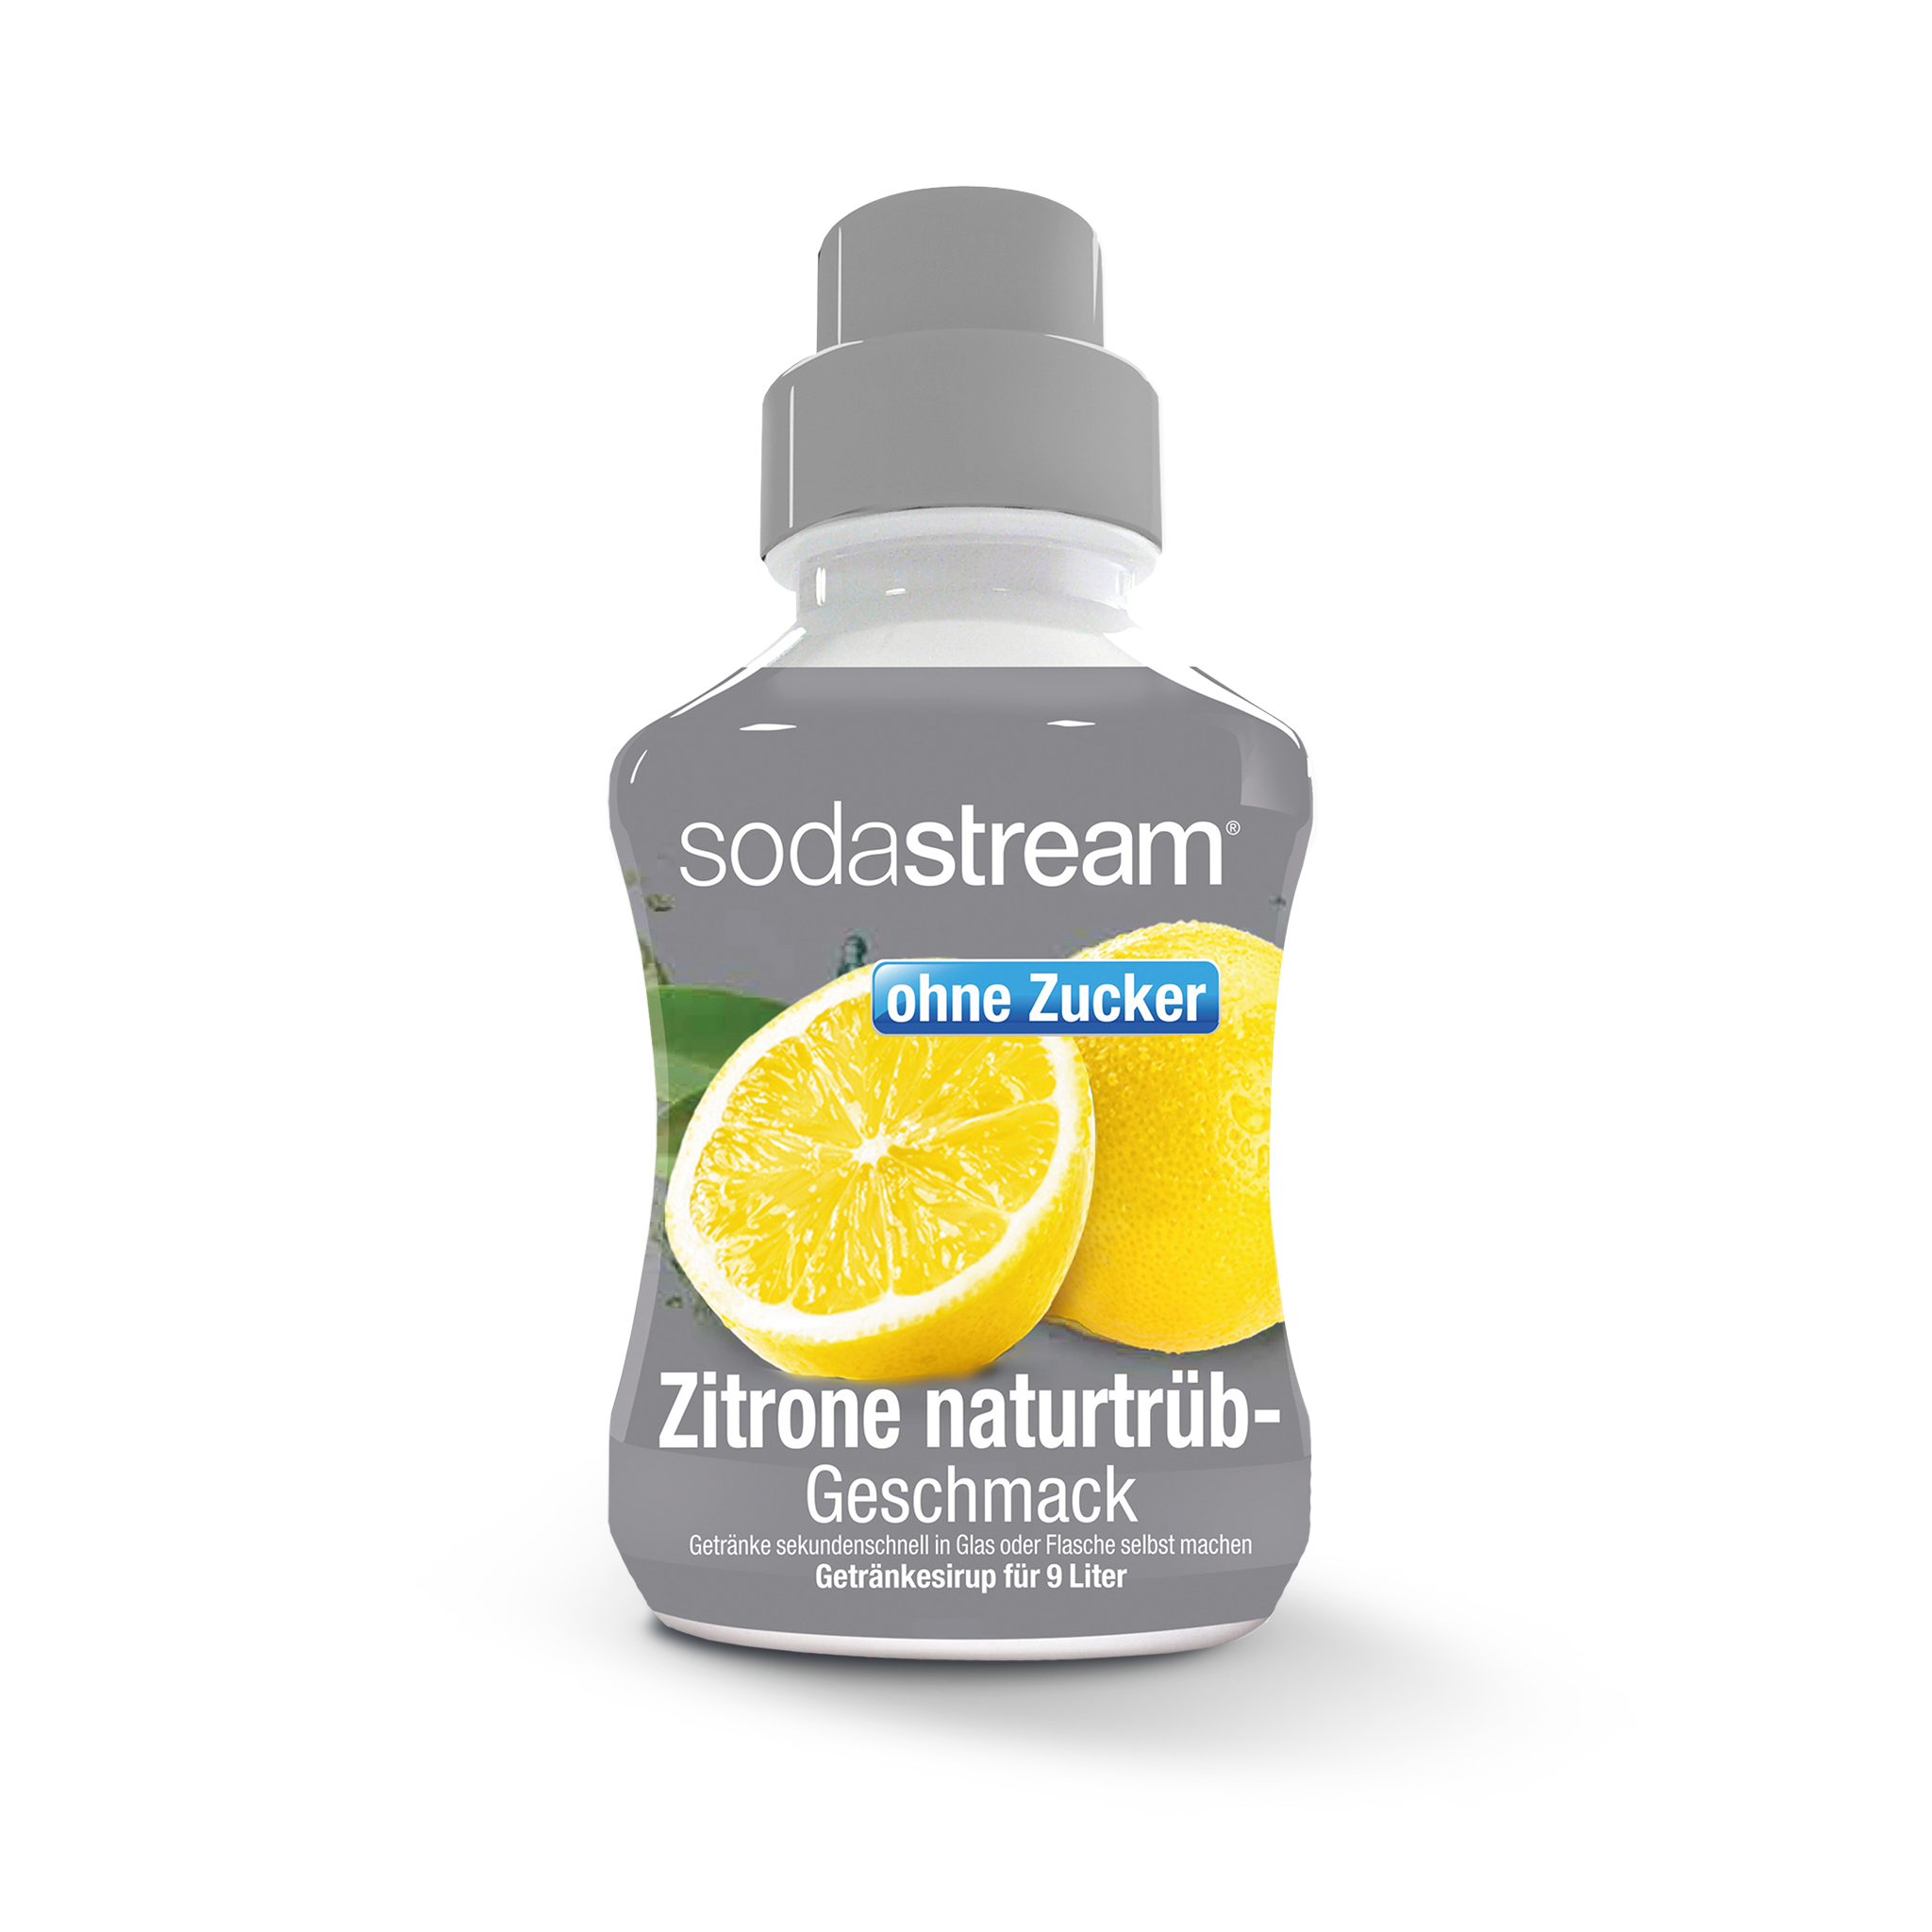 Zitrone ohne Zucker Sirup 375ml sodastream